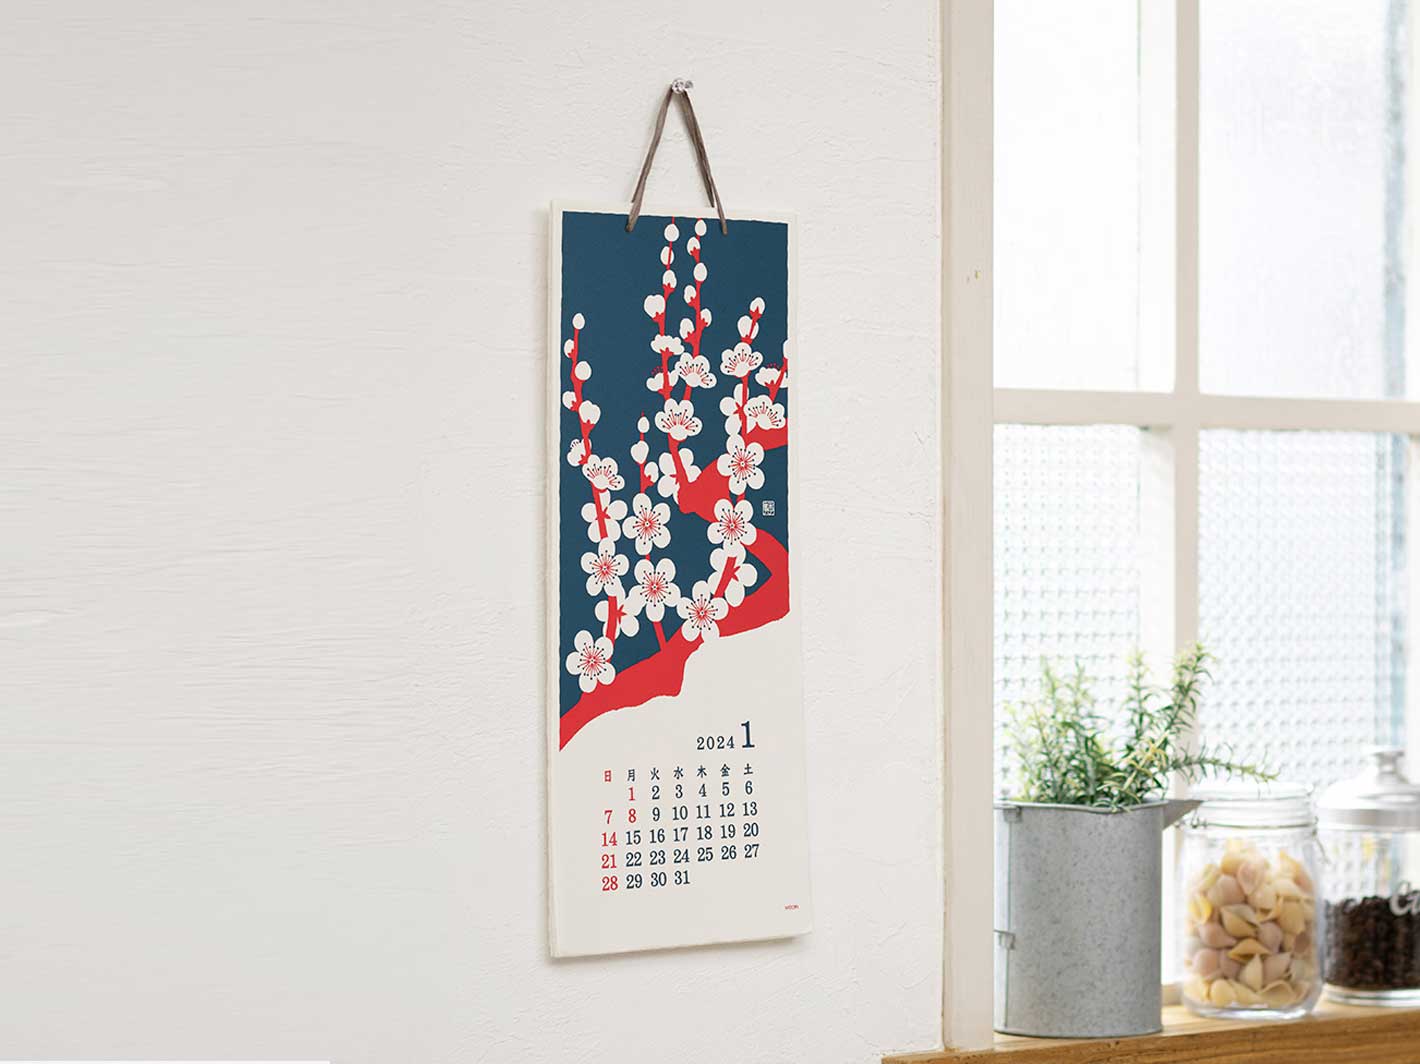 2024 Echizen Wall Calendar L Flower